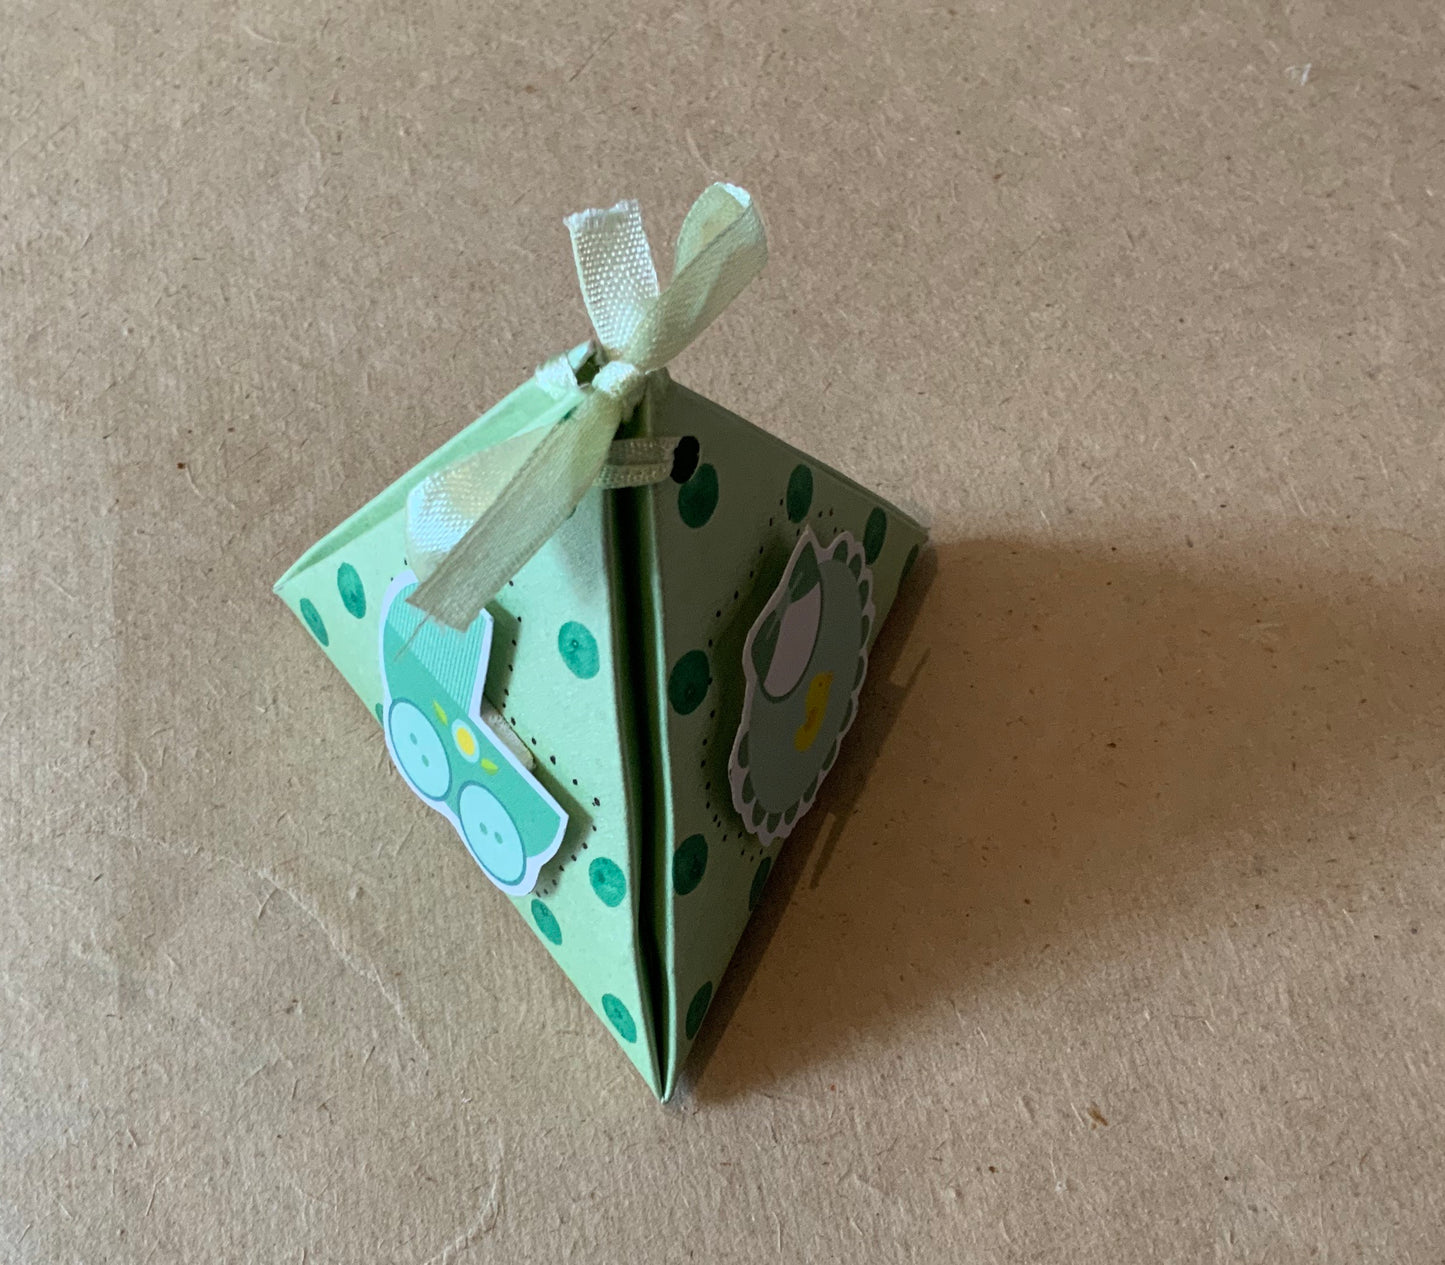 Triangular box